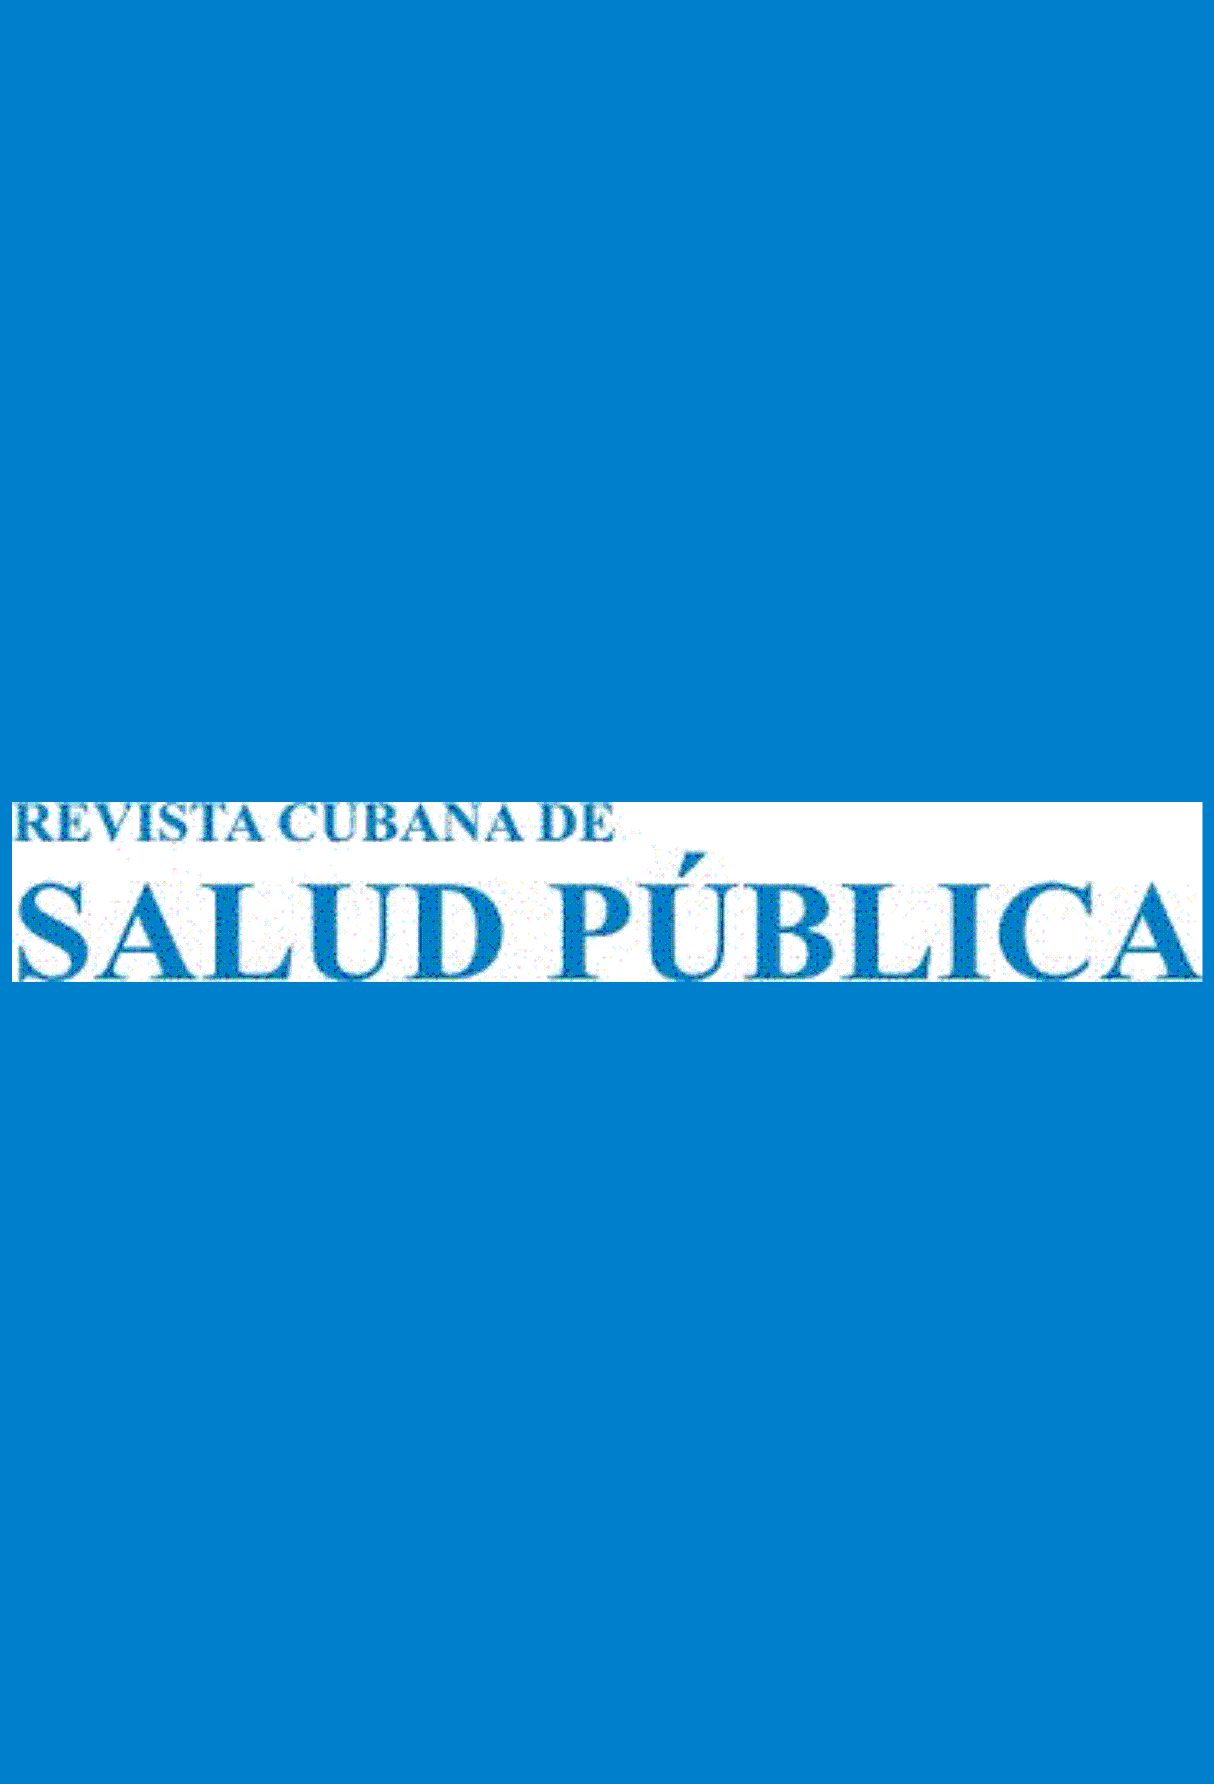 Capa: Revista Cubana de Salud Publica